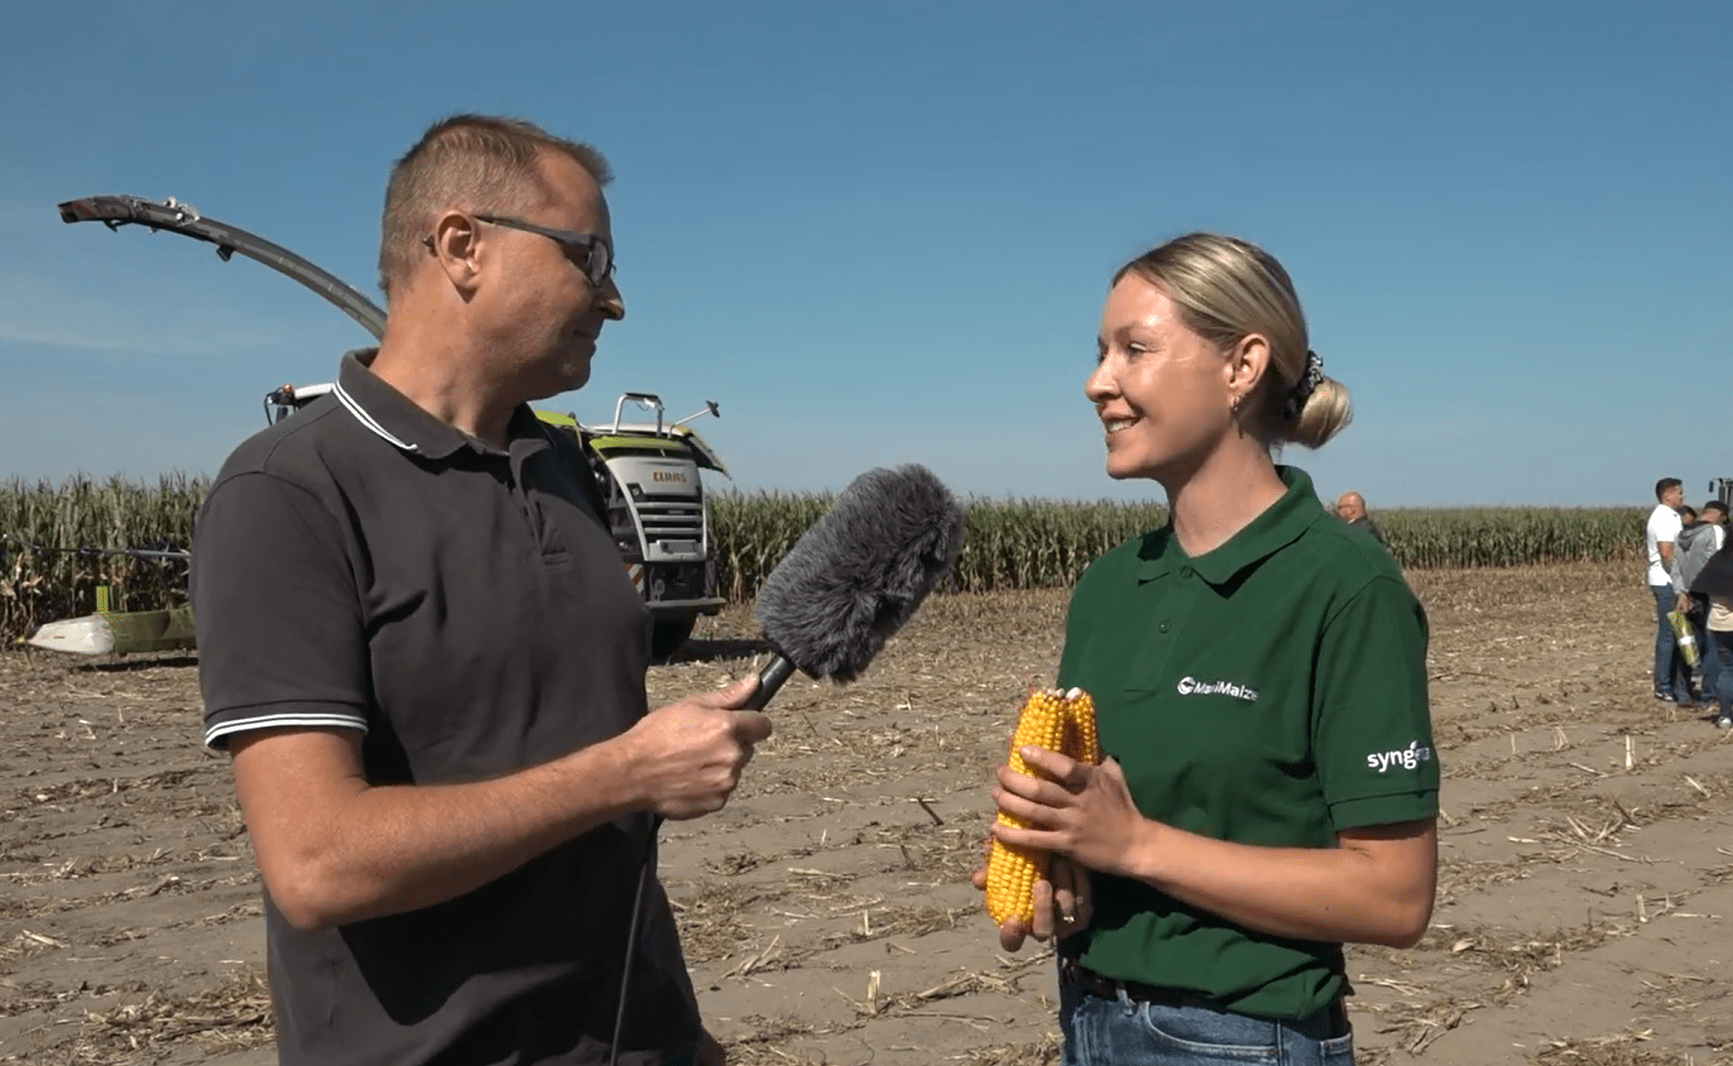 Zapraszamy do obejrzenia wywiadów, jakie nagraliśmy podczas prezentacji polowej mieszanki odmian kukurydzy MaxiMaize w czasie MaxiMalnych Dni Pola.